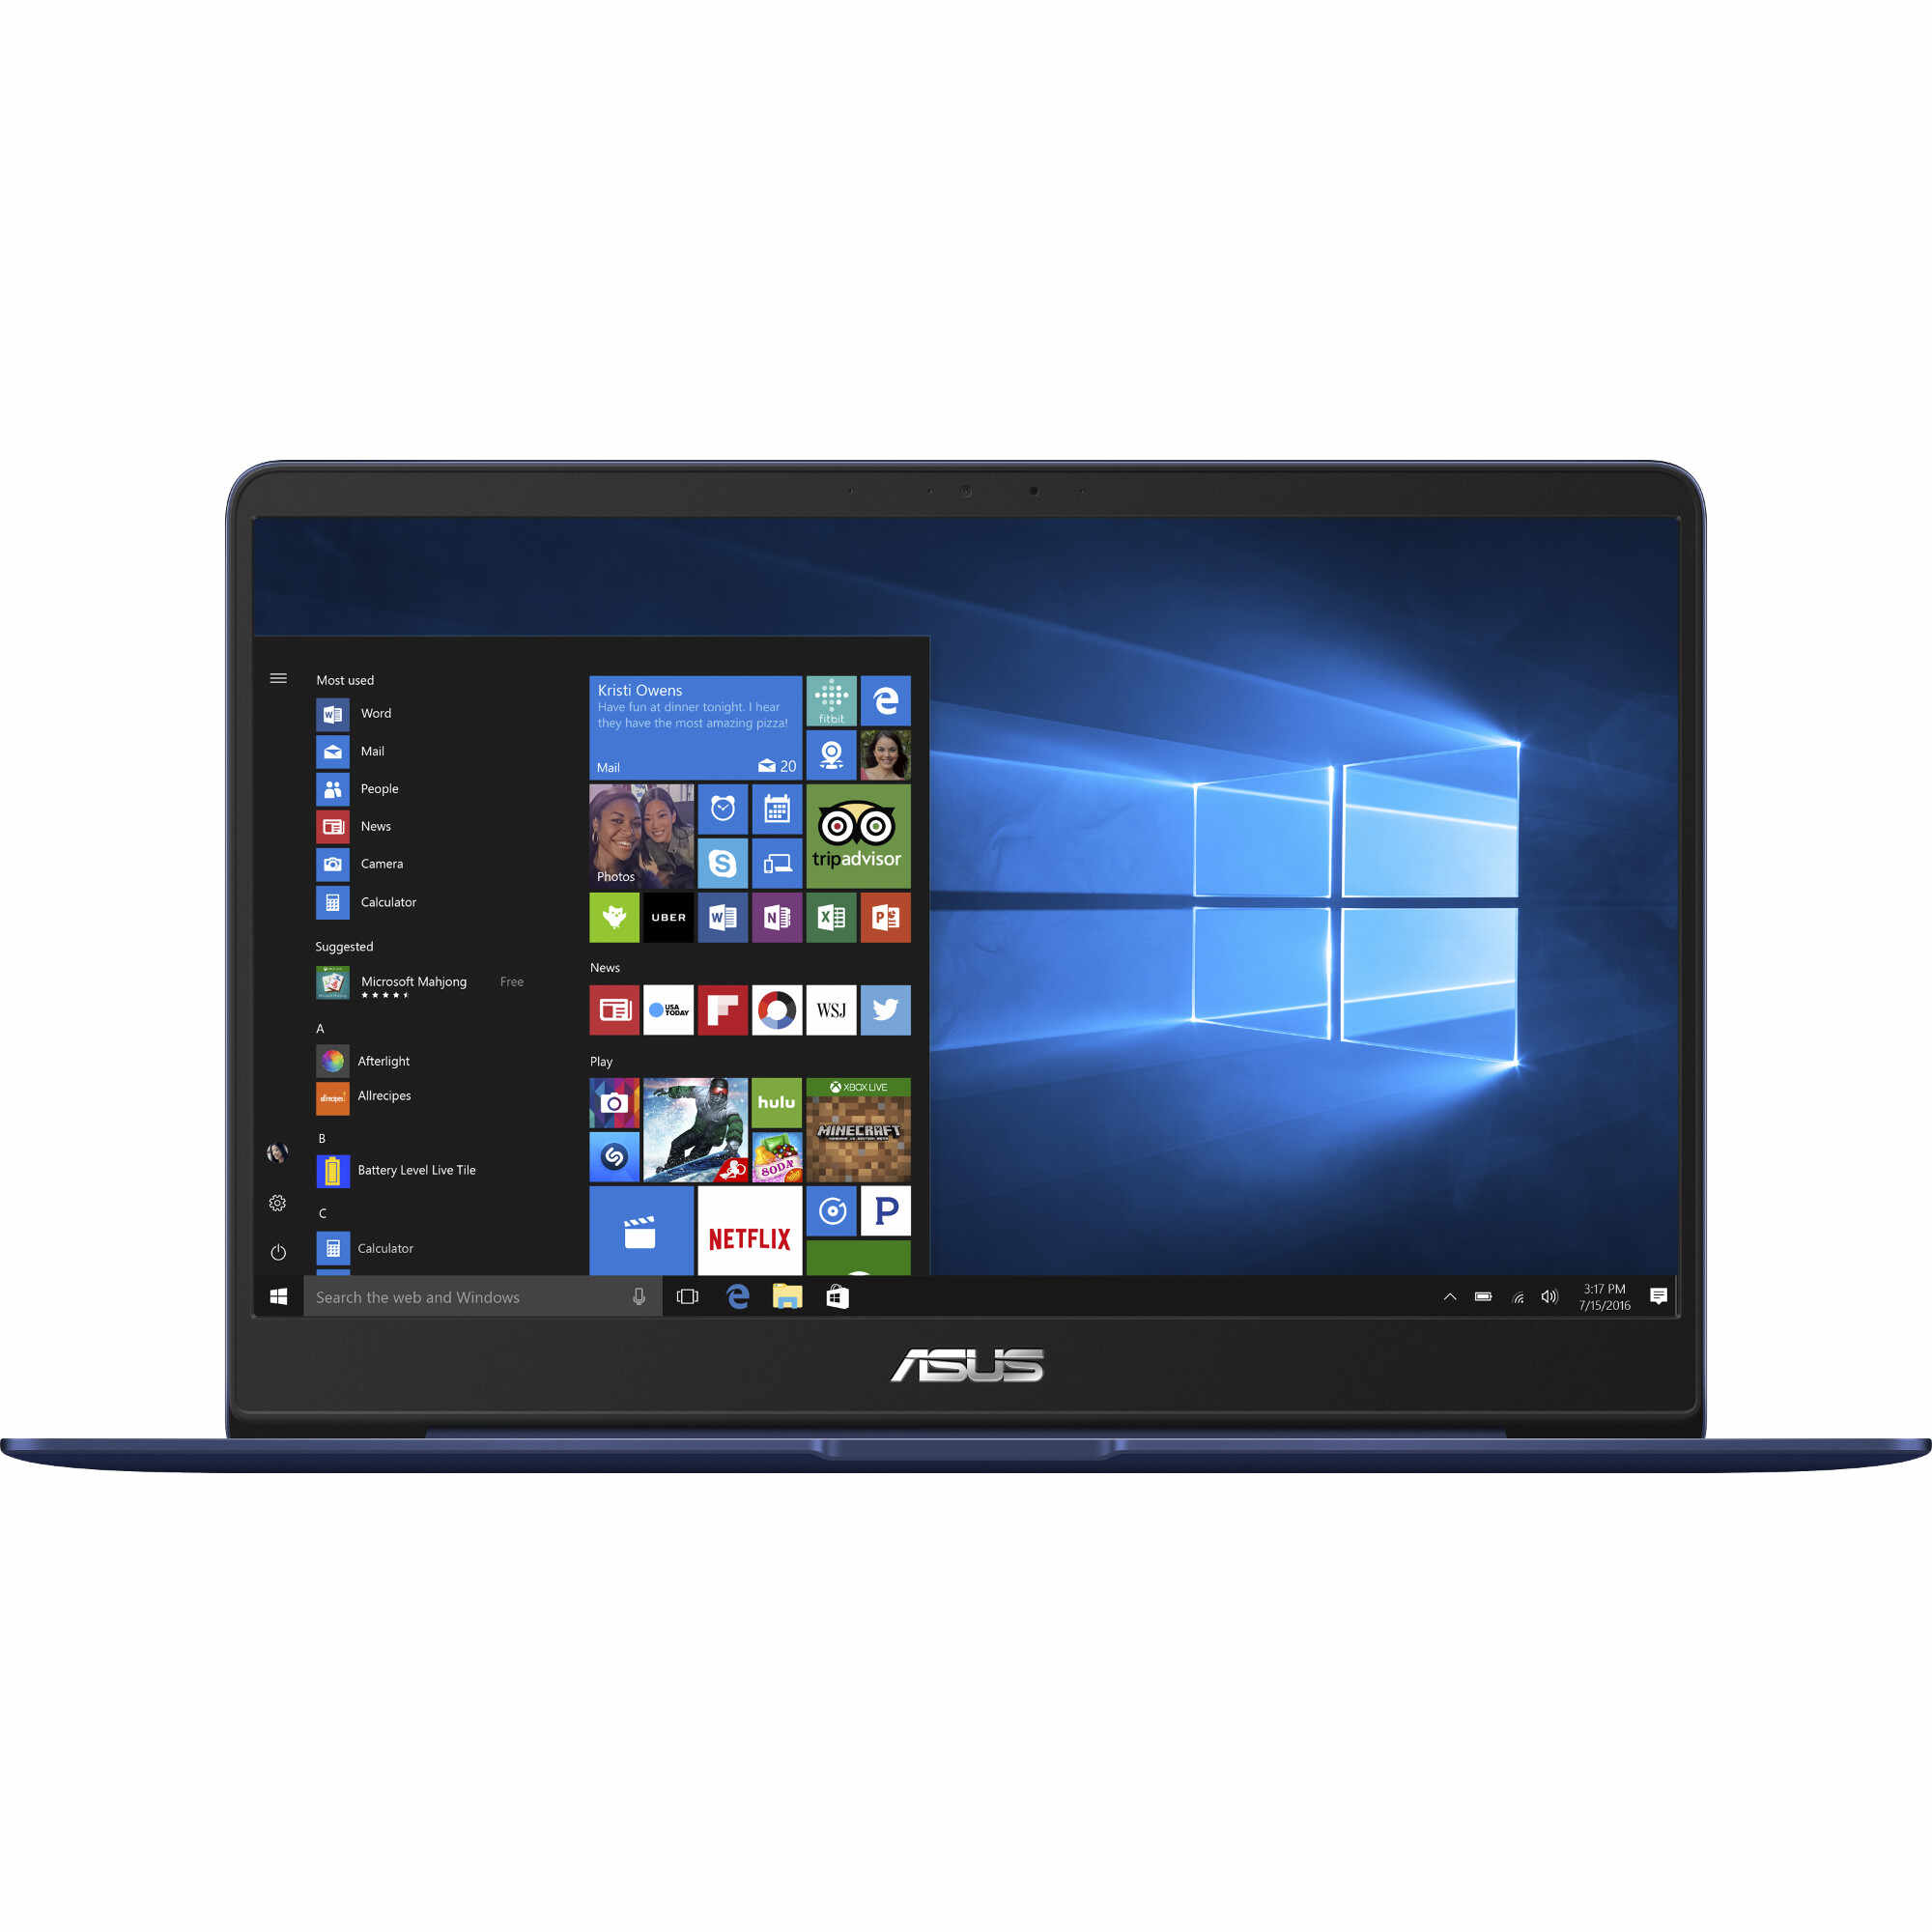 Laptop ASUS UX430UQ-GV006T, Intel Core i5-7200U, 8GB DDR4, SSD 256GB, nVidia GeForce 940MX 2GB, Windows 10